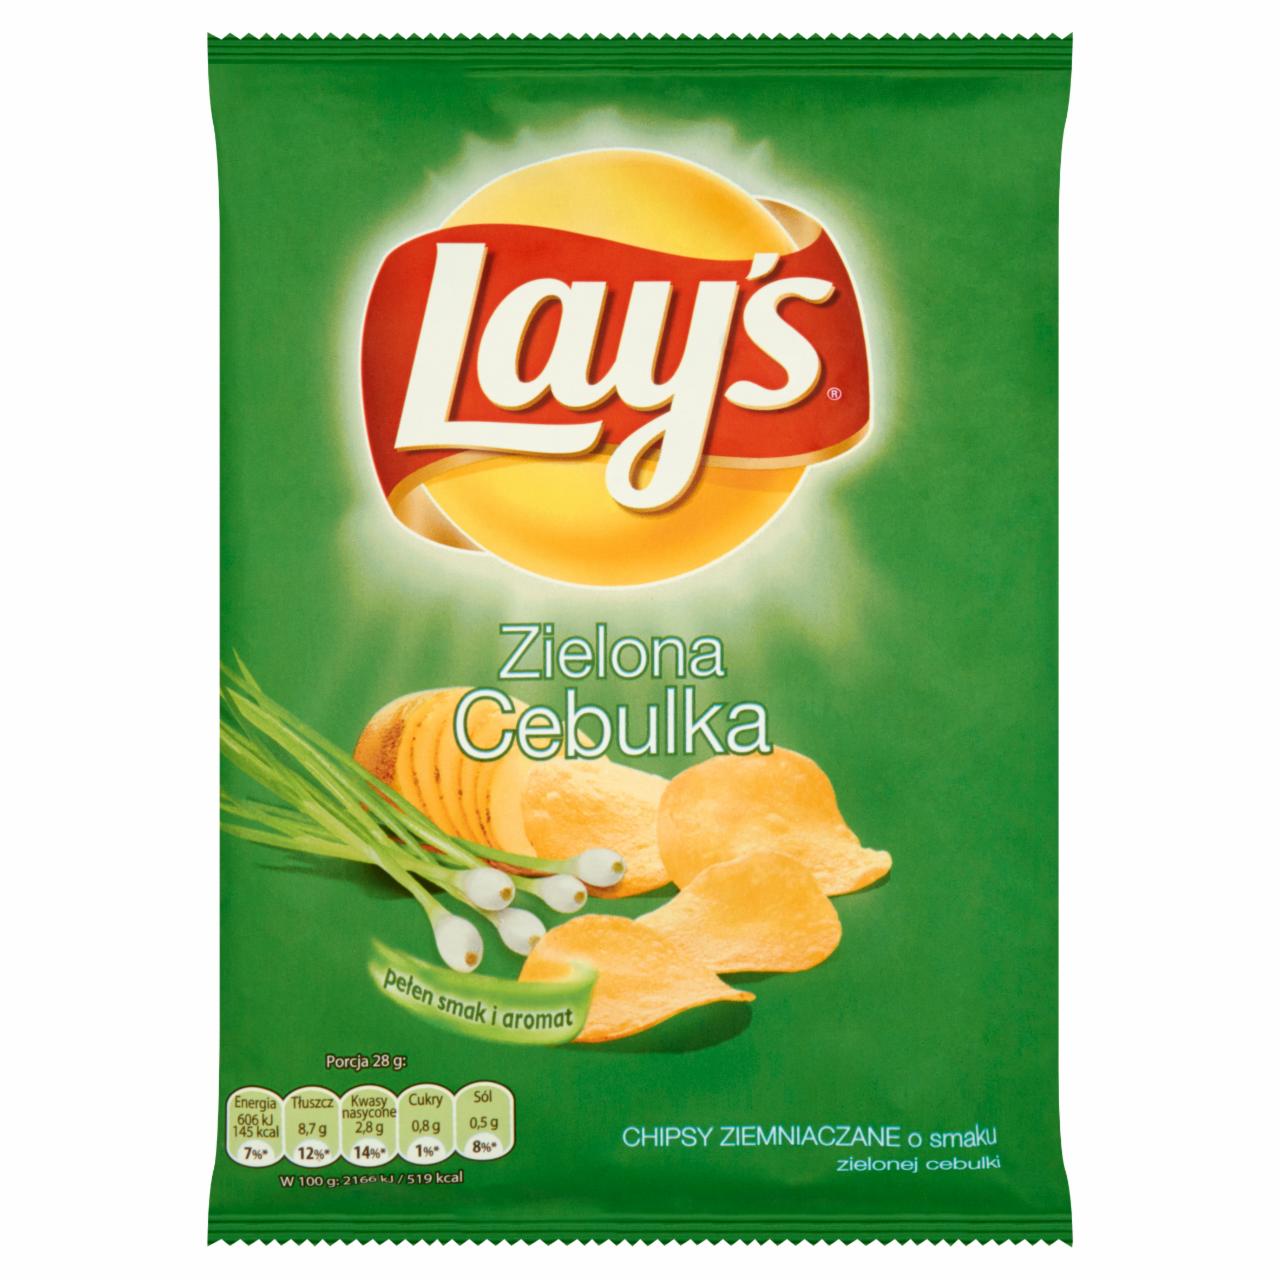 Zdjęcia - Lay's Zielona Cebulka Chipsy ziemniaczane 28 g